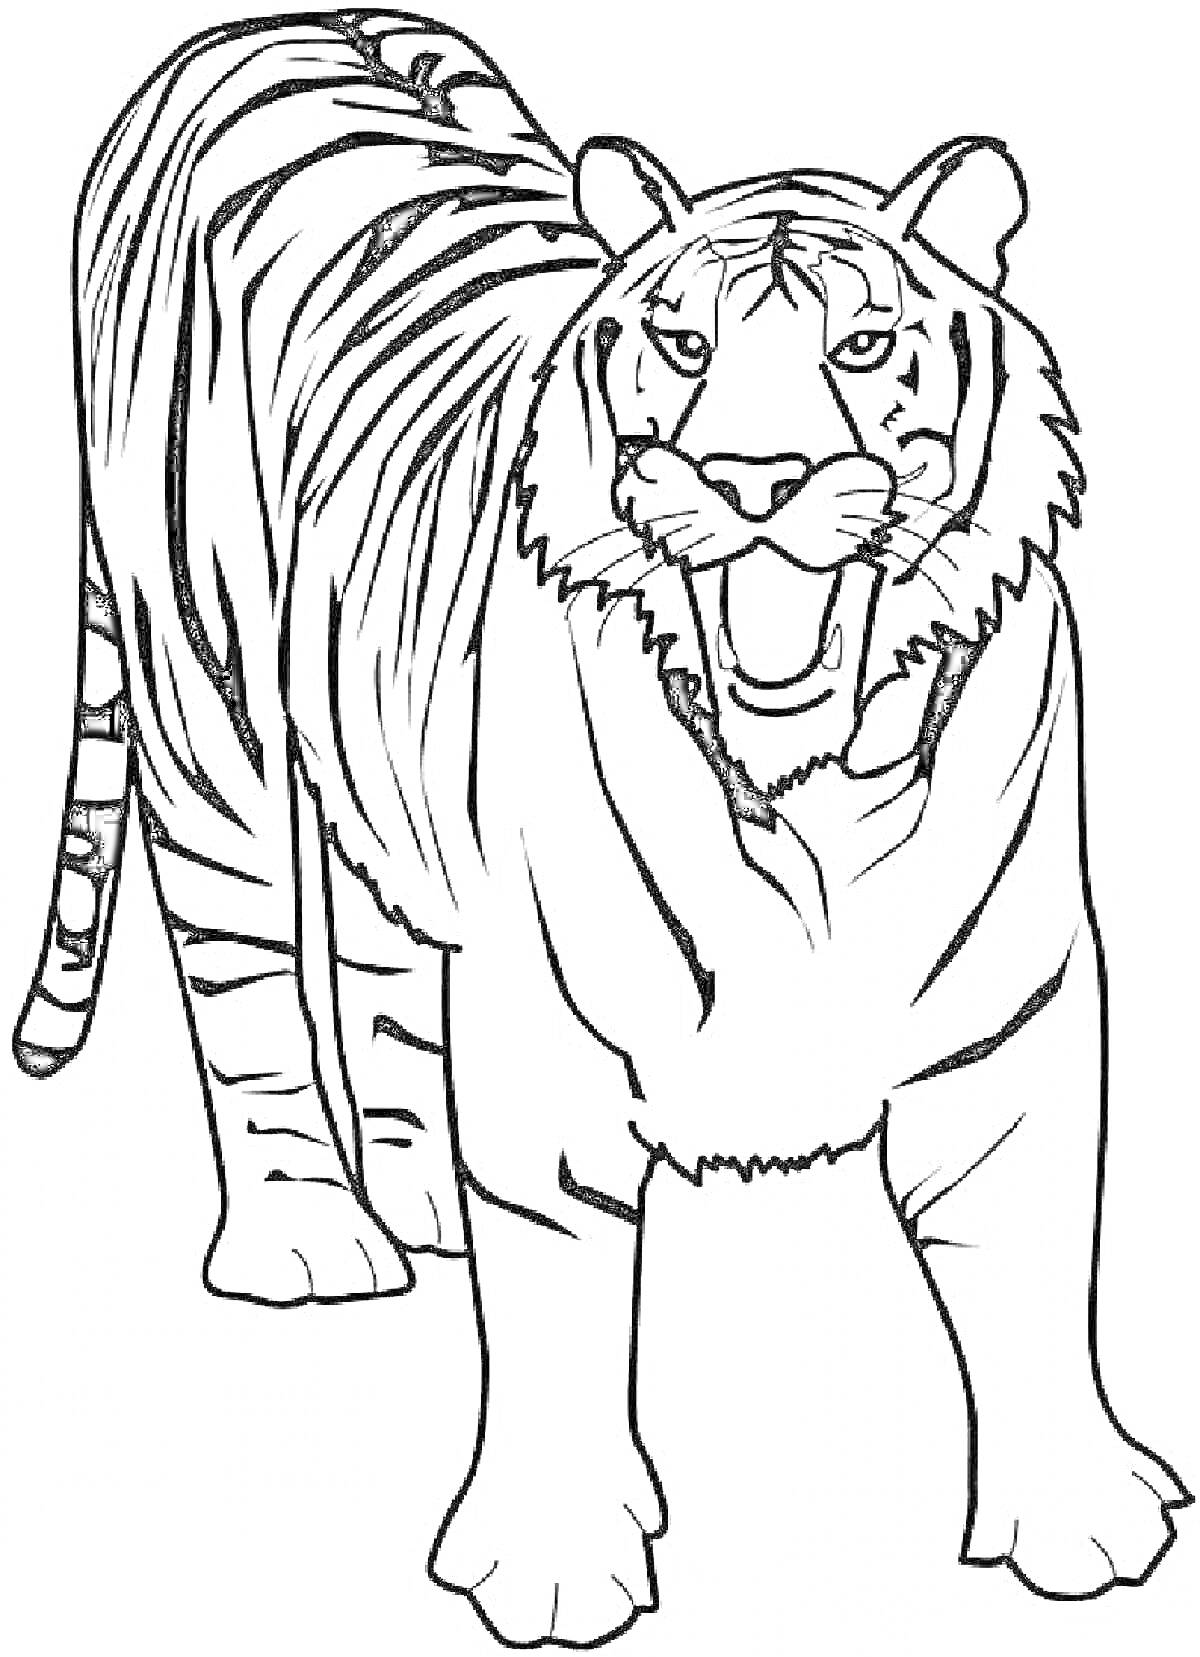 Раскраска Тигр стоящий с полосами на теле и поднятой головой